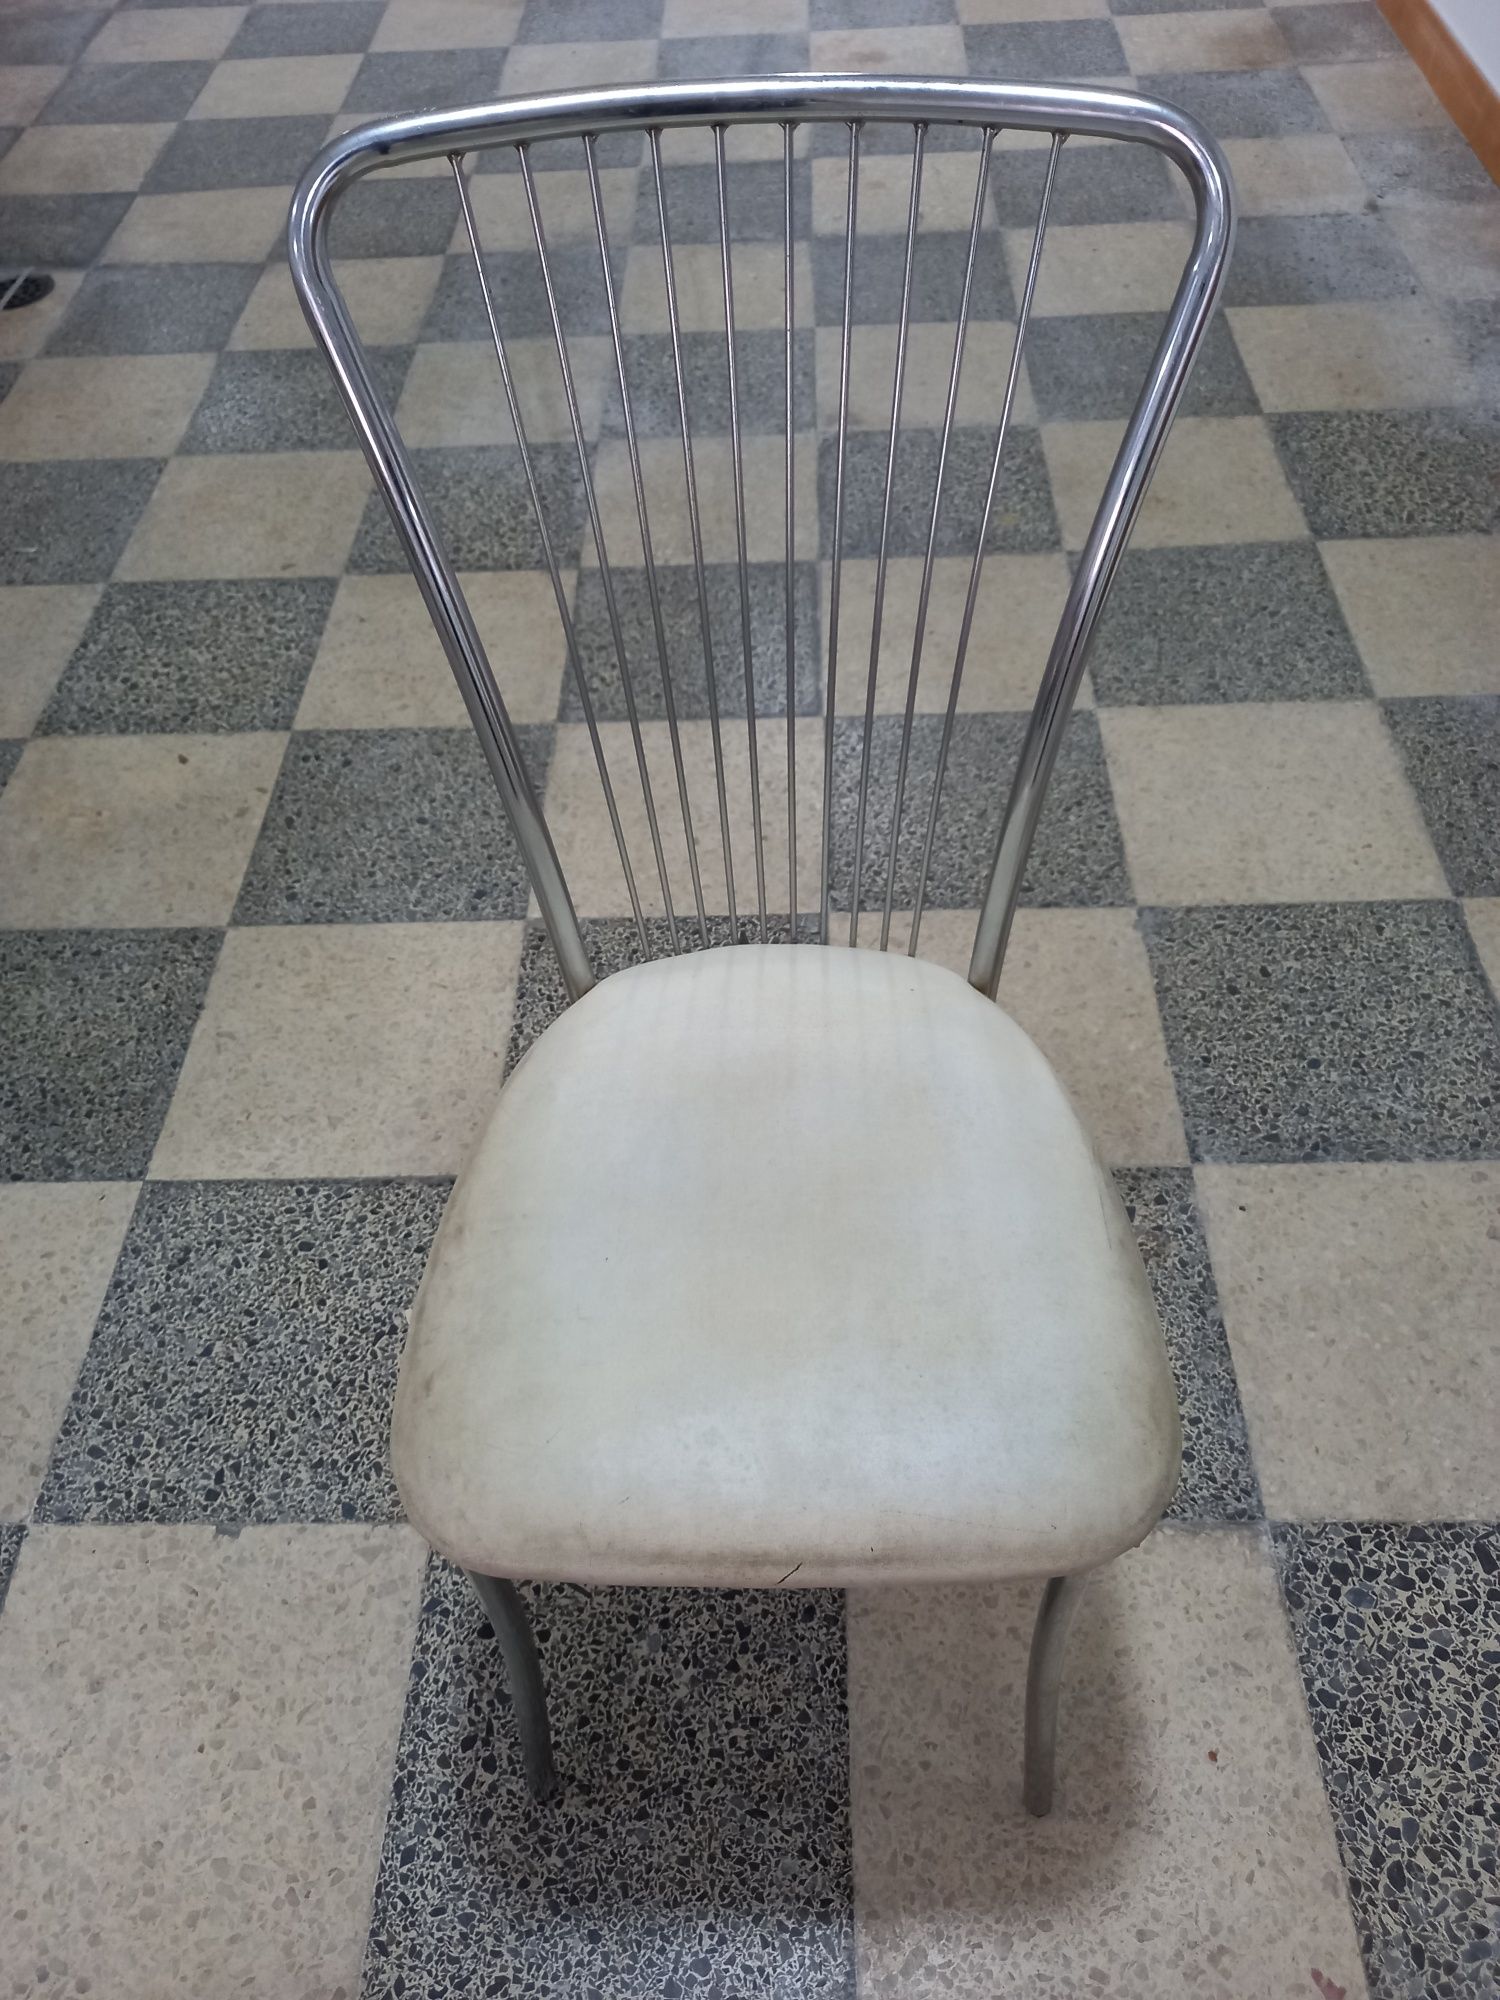 Cadeiras em metal